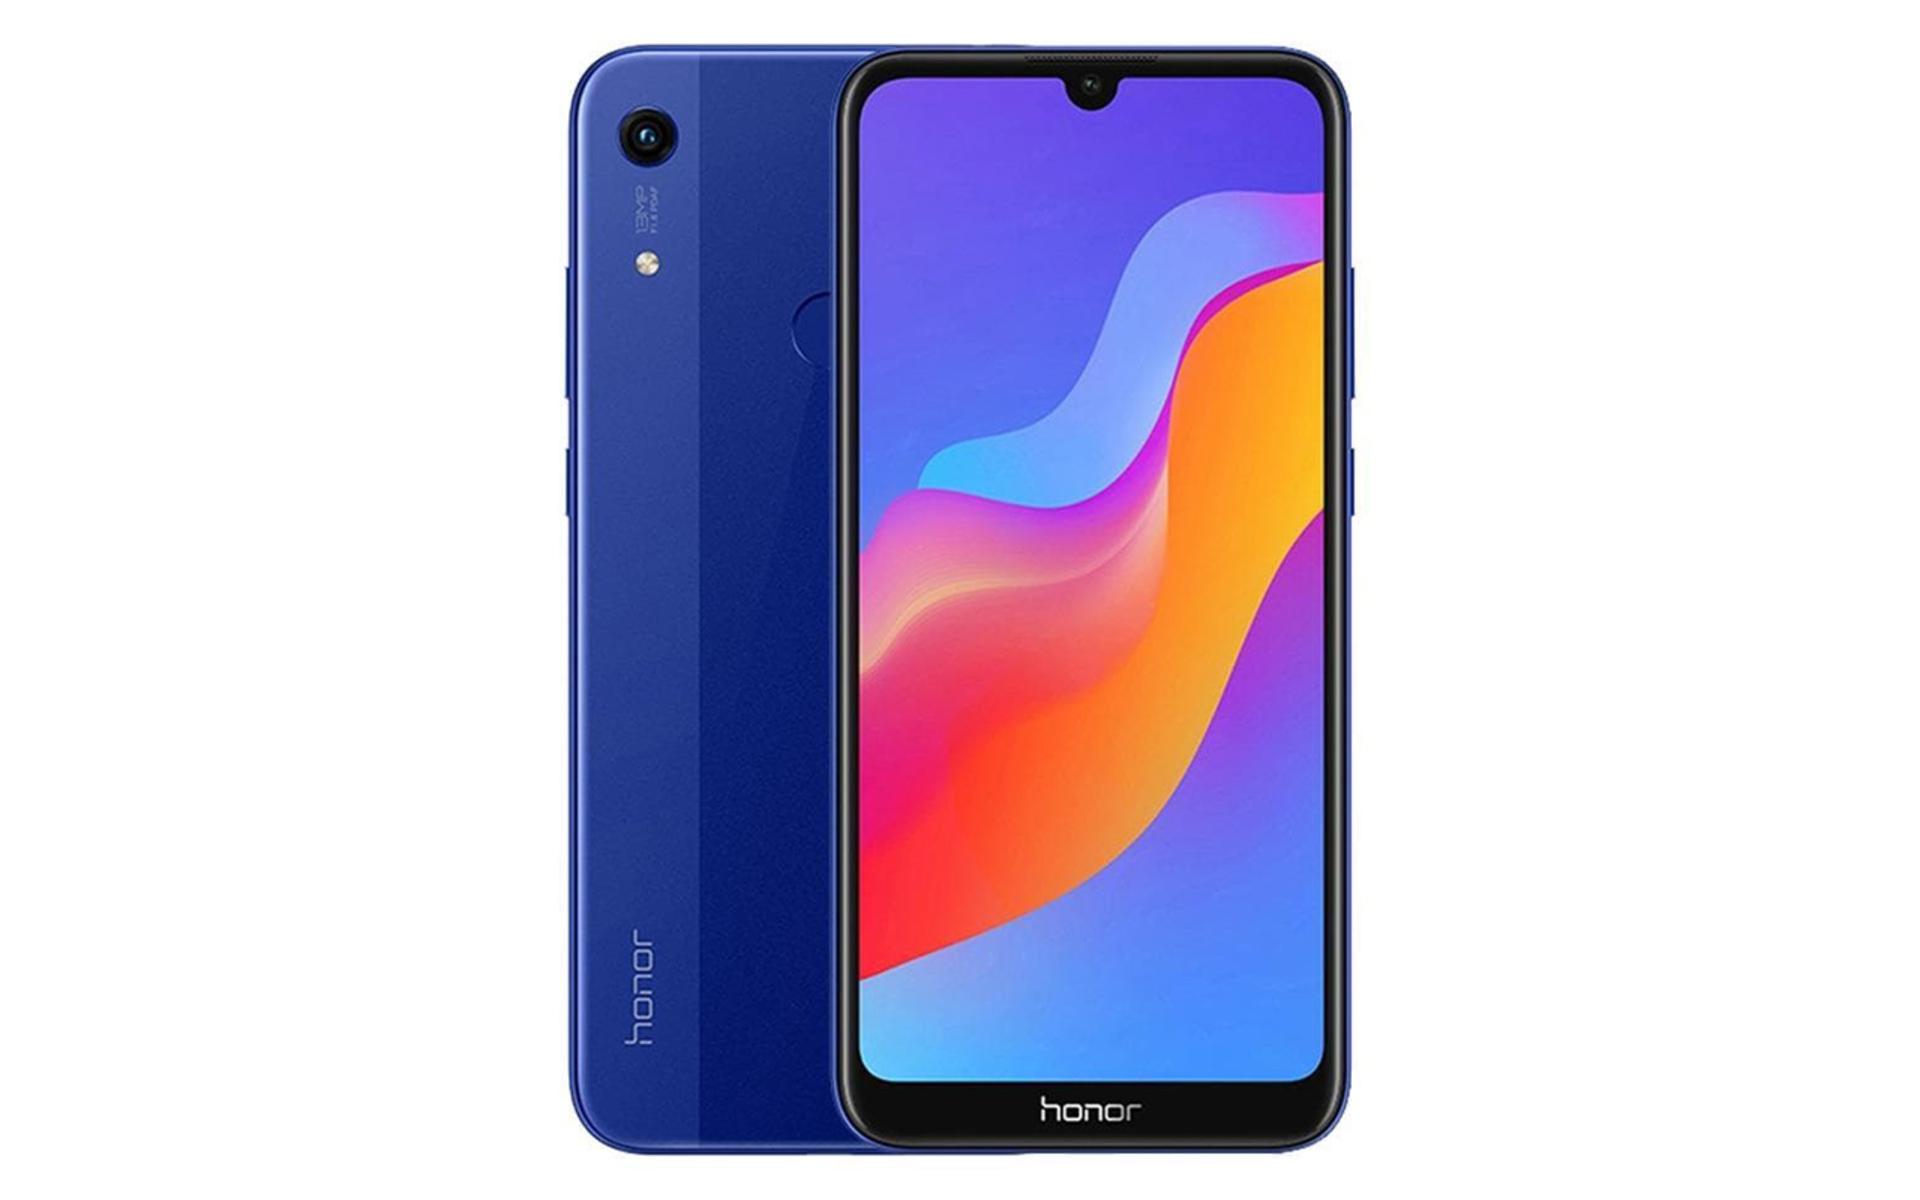 گوشی Honor 8A 2020 نمای جلو و پشت / آنر 8A 2020